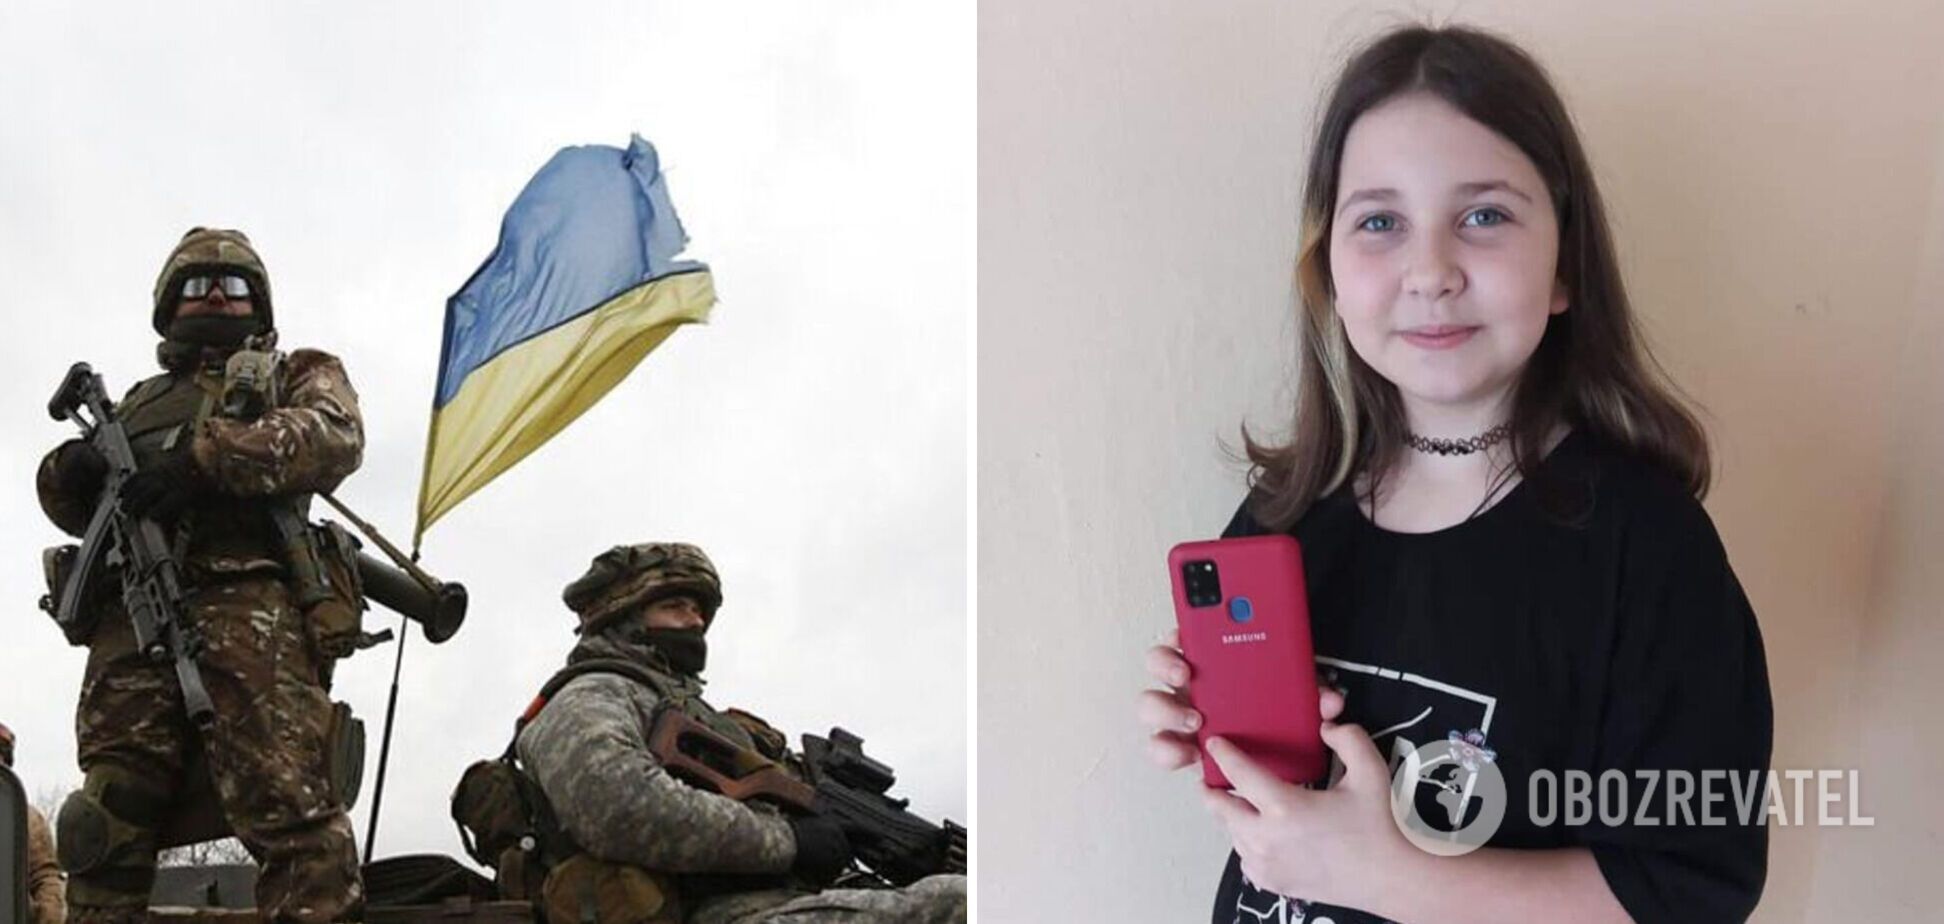 Украинские защитники вернули 10-летней девочке телефон, который у нее забрали оккупанты: его нашли у пленного. Фото